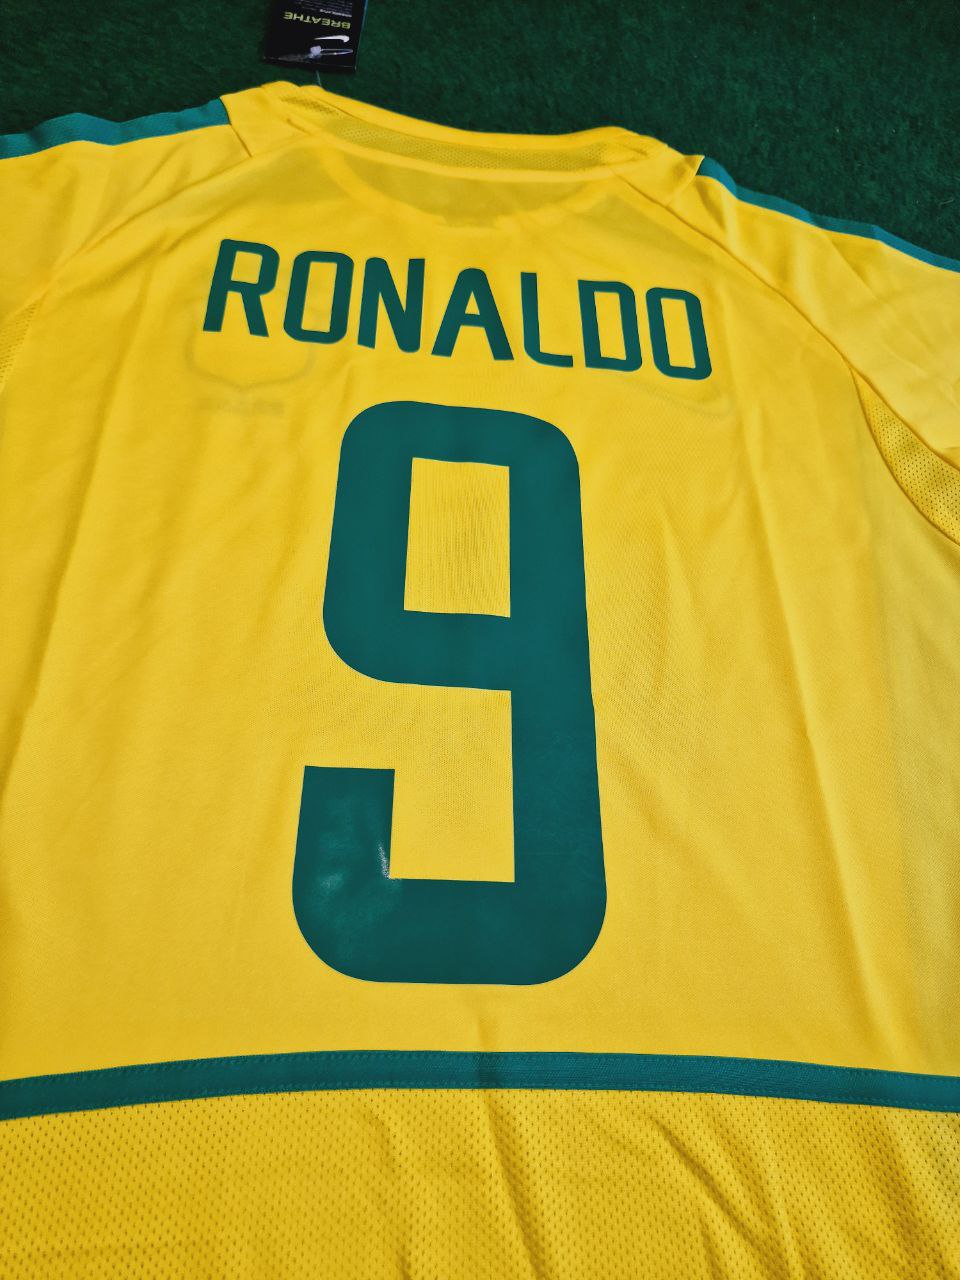 Ronaldo Nazario Brazil Retro Football Jersey